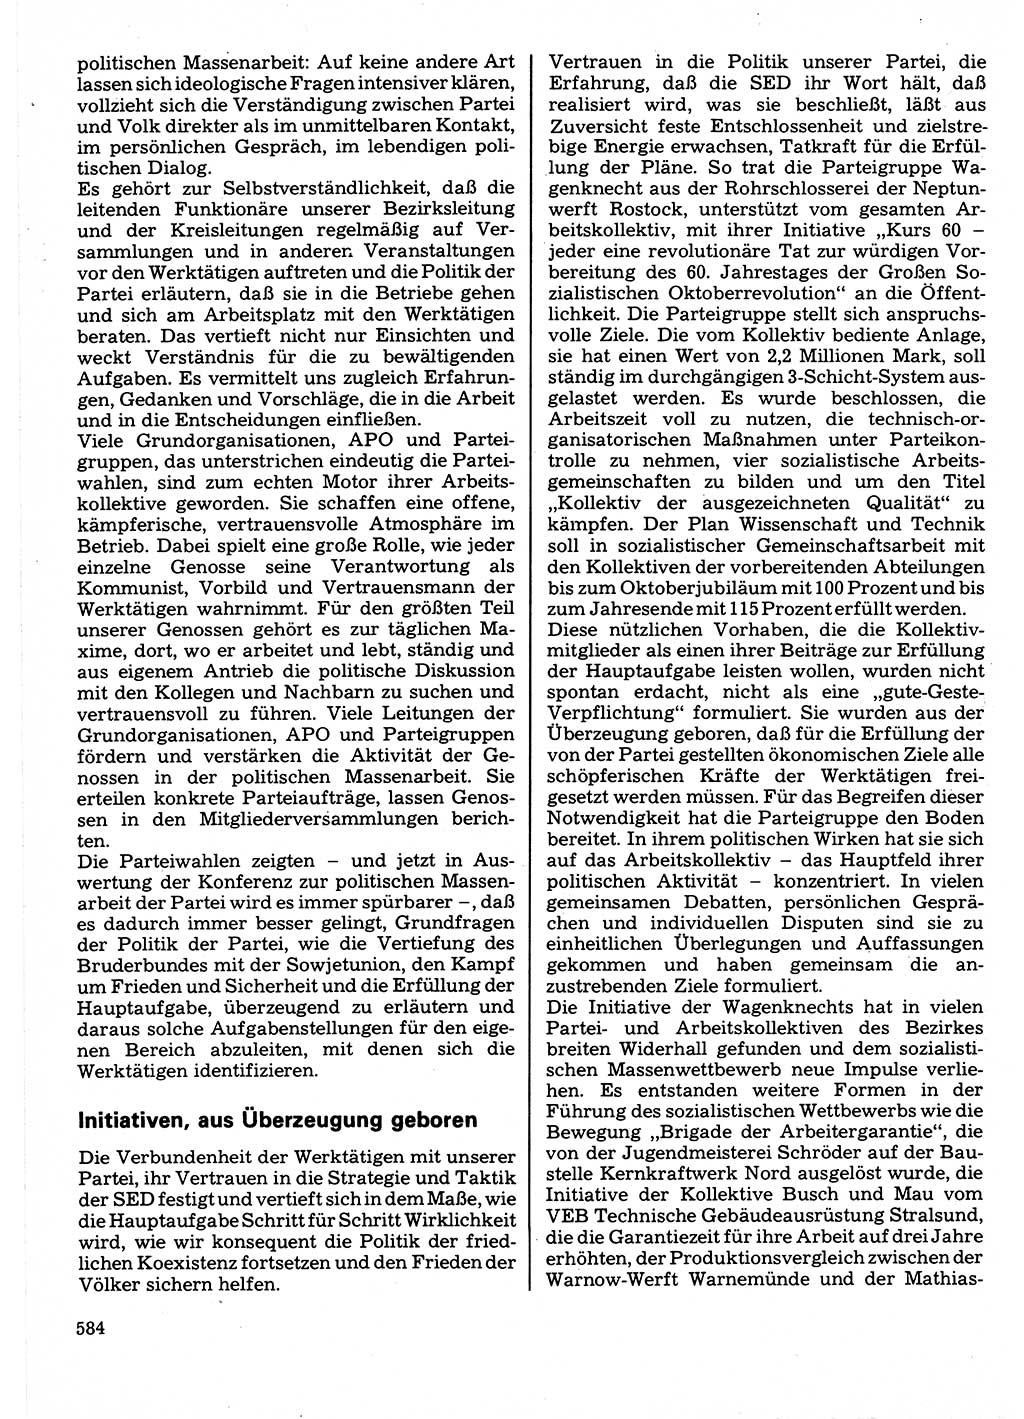 Neuer Weg (NW), Organ des Zentralkomitees (ZK) der SED (Sozialistische Einheitspartei Deutschlands) für Fragen des Parteilebens, 32. Jahrgang [Deutsche Demokratische Republik (DDR)] 1977, Seite 584 (NW ZK SED DDR 1977, S. 584)